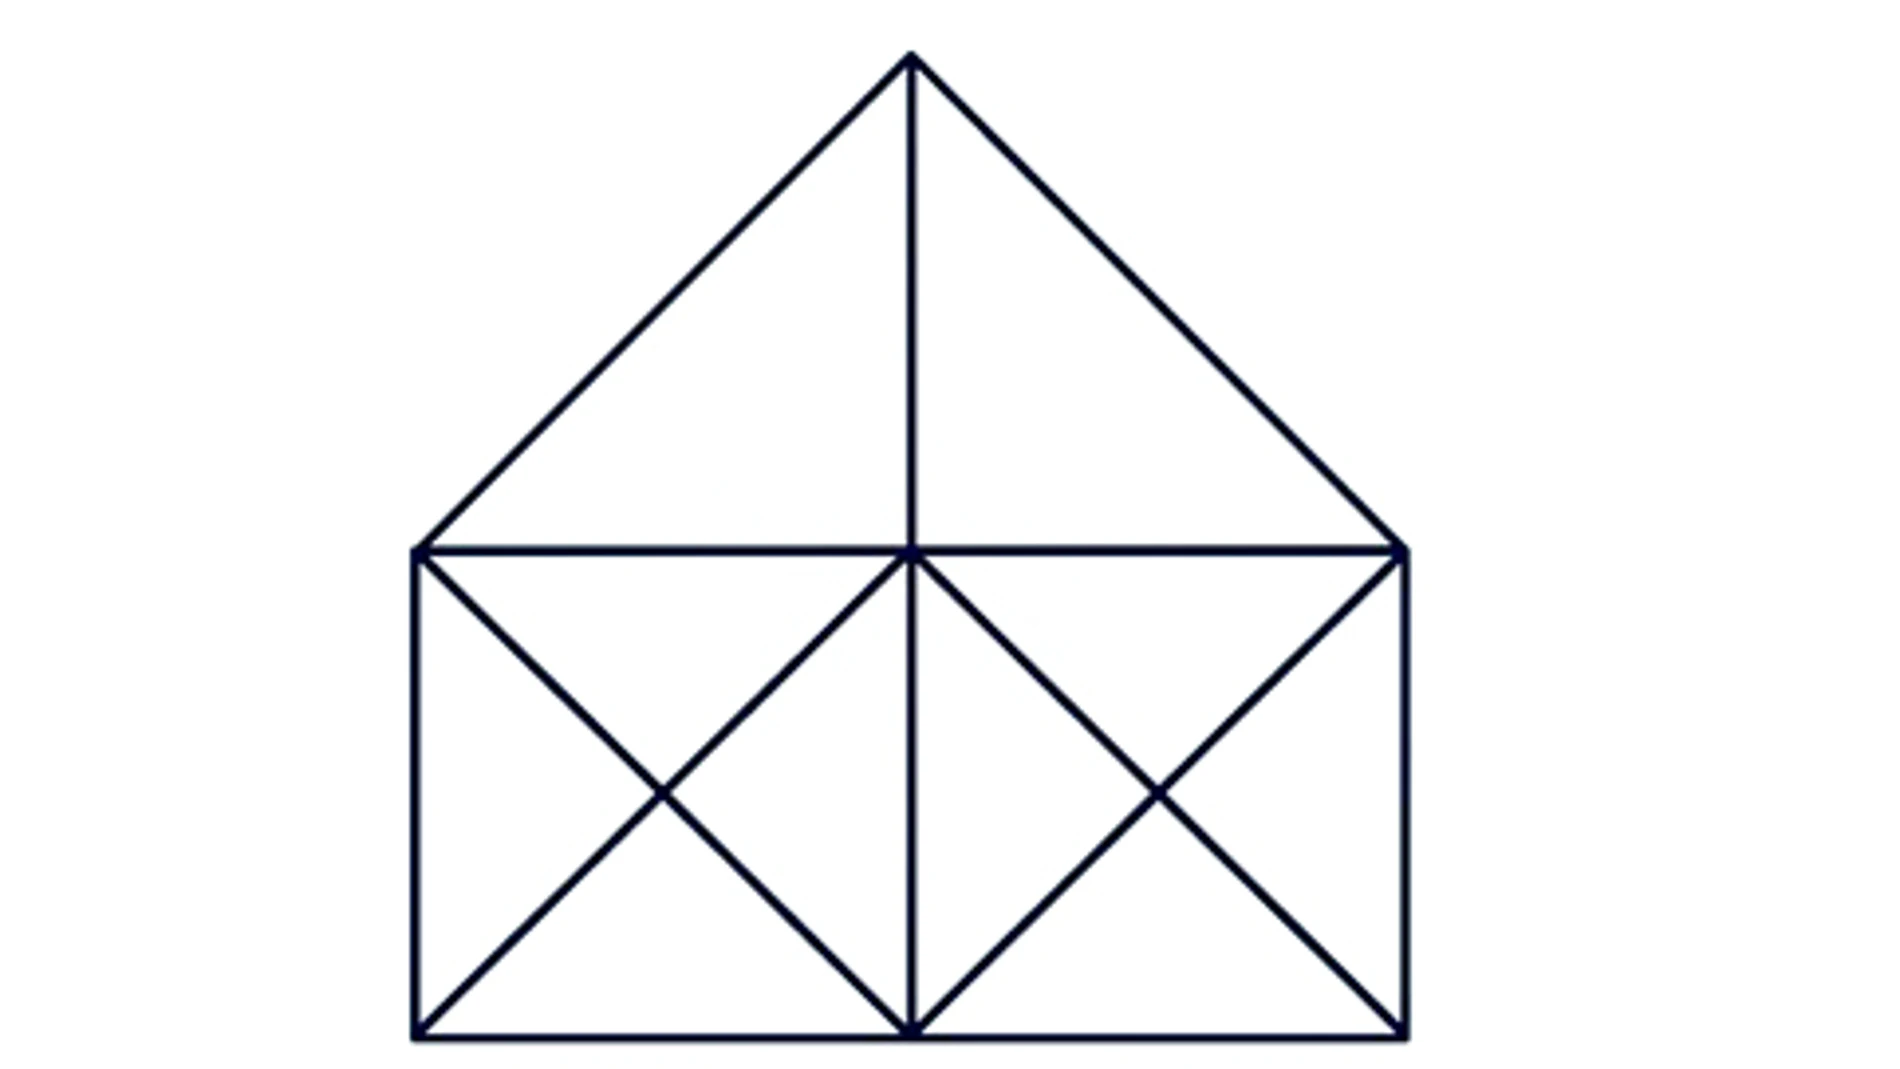 Este acertijo visual consiste en contar el número de triángulos de la imagen